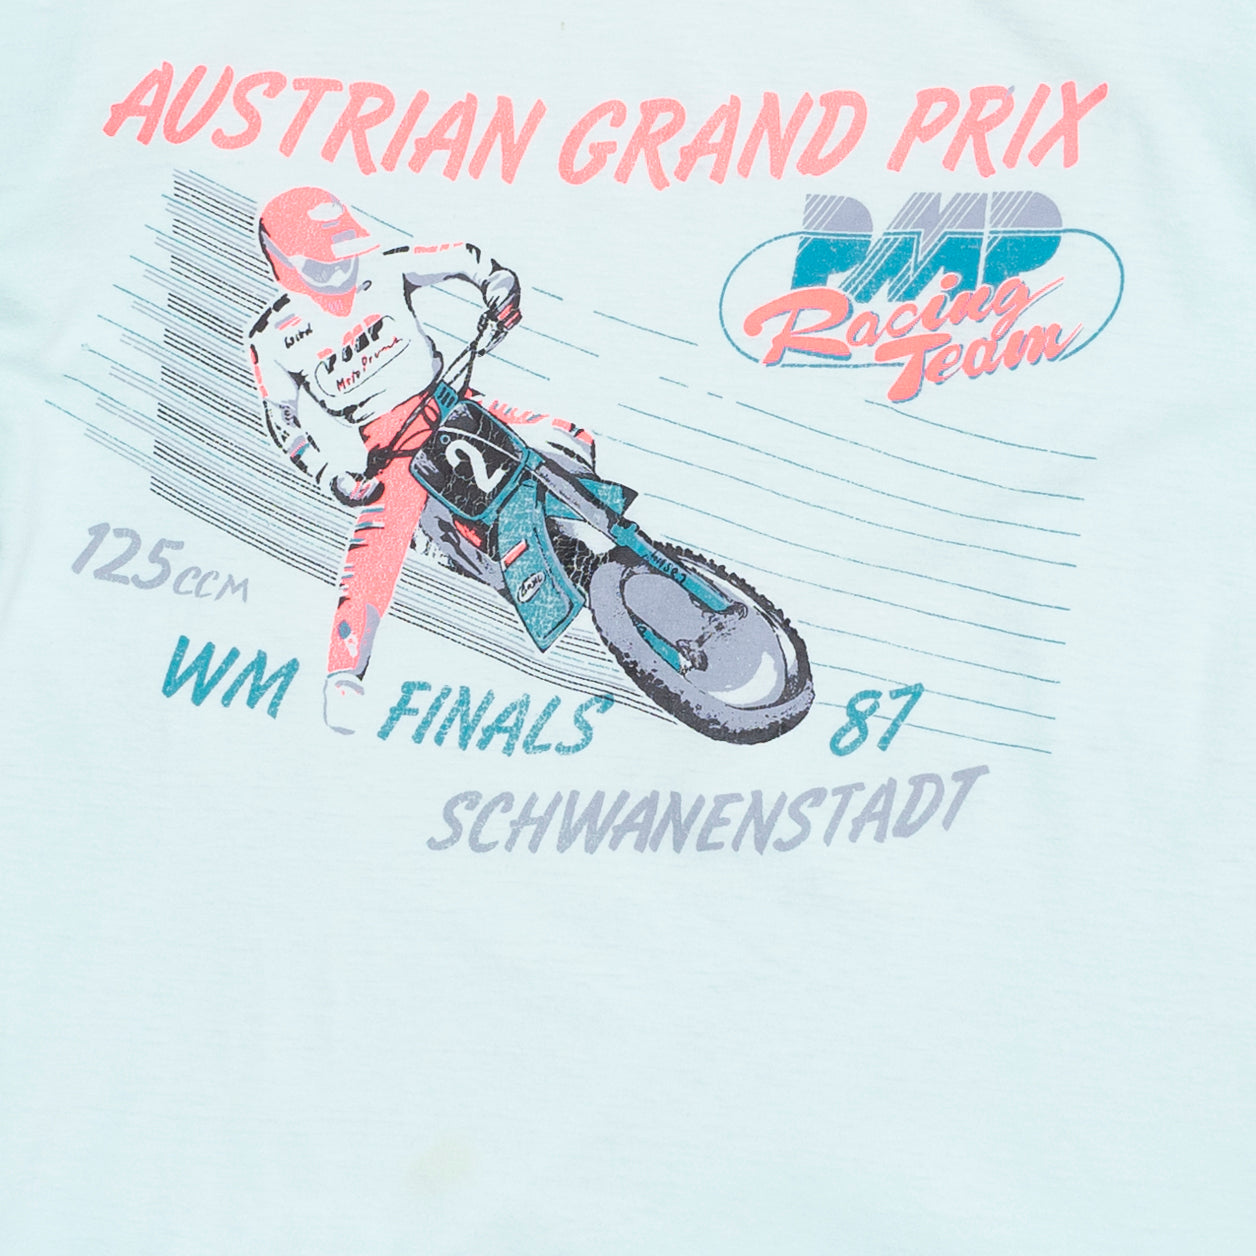 Austrian Motocross Grand Prix '87 T Shirt, XS